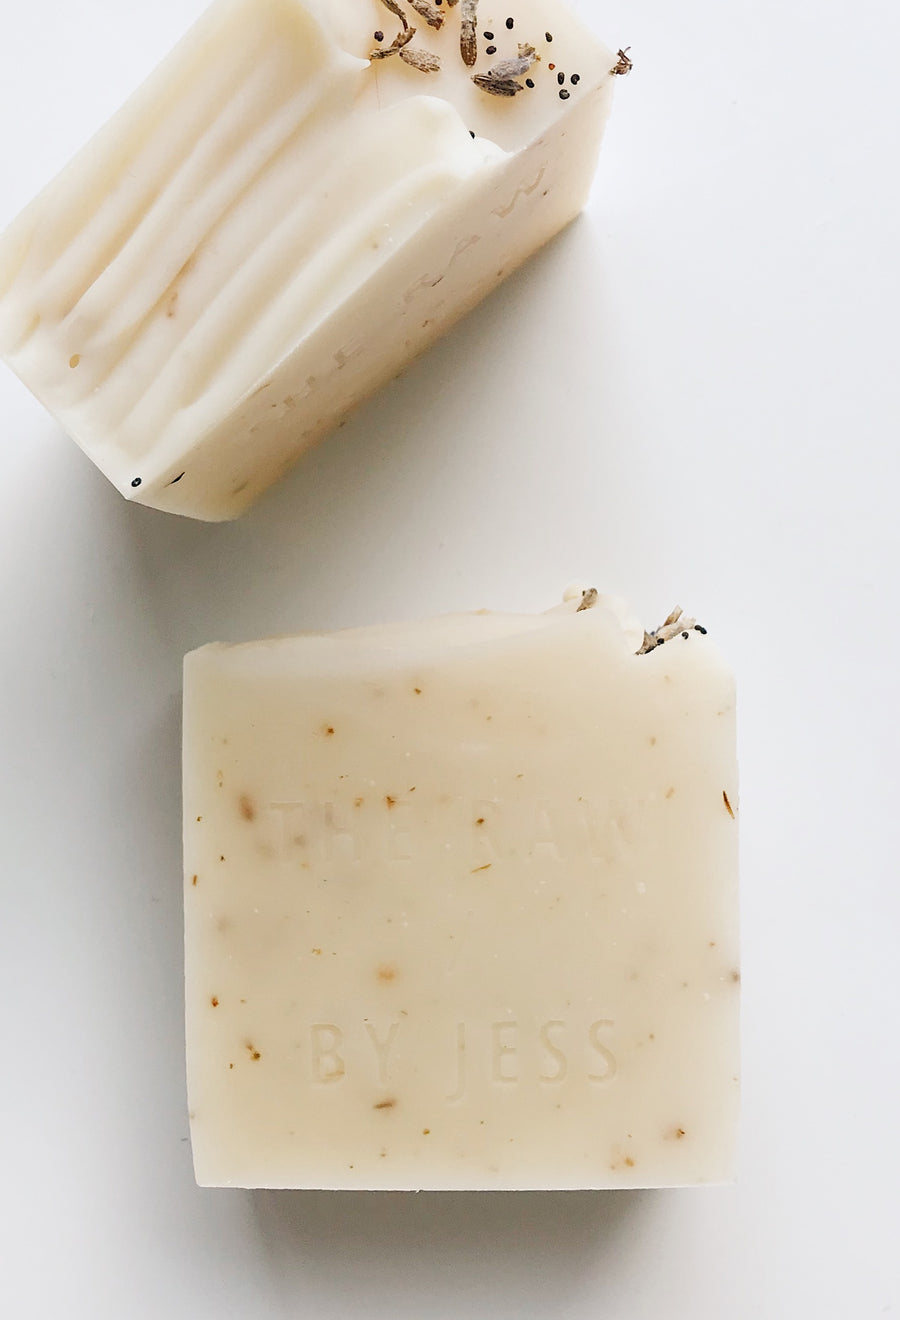 Cold Press Soap - Lavender